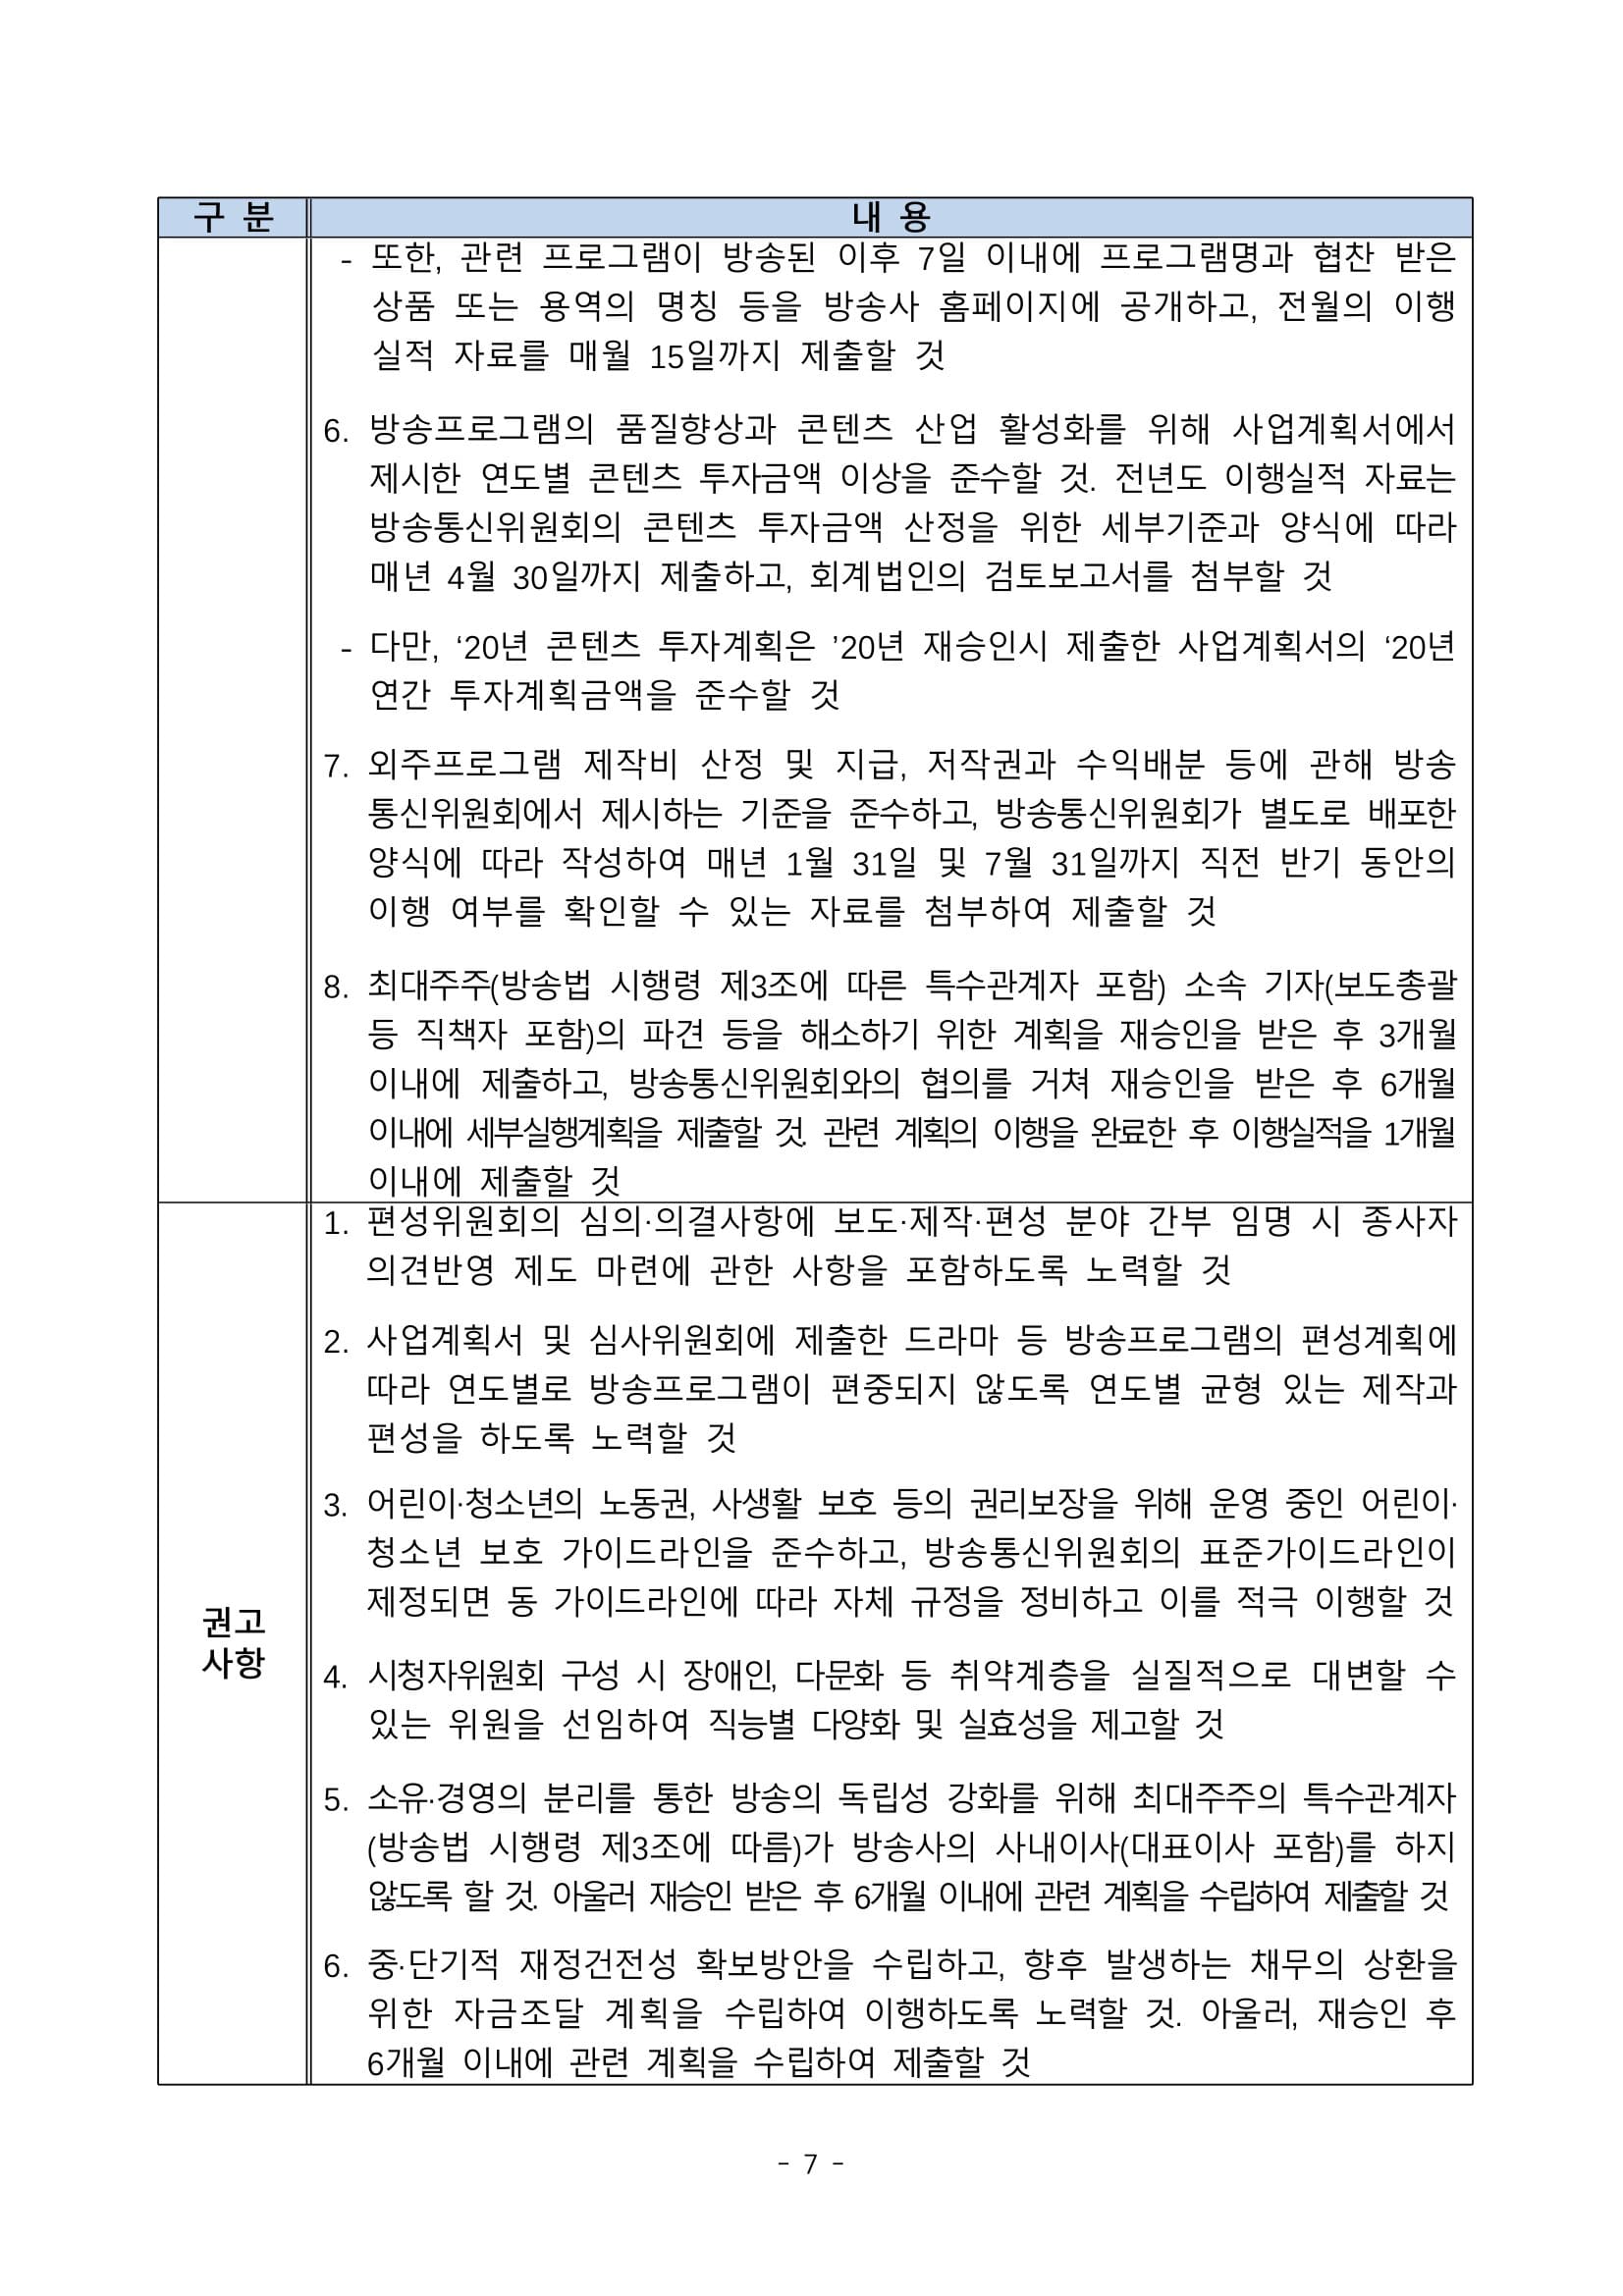 방송통신위원회(위원장 한상혁, 이하 ‘방통위’라 함)는 2020년 11월 27일(금) 14_0007.jpg